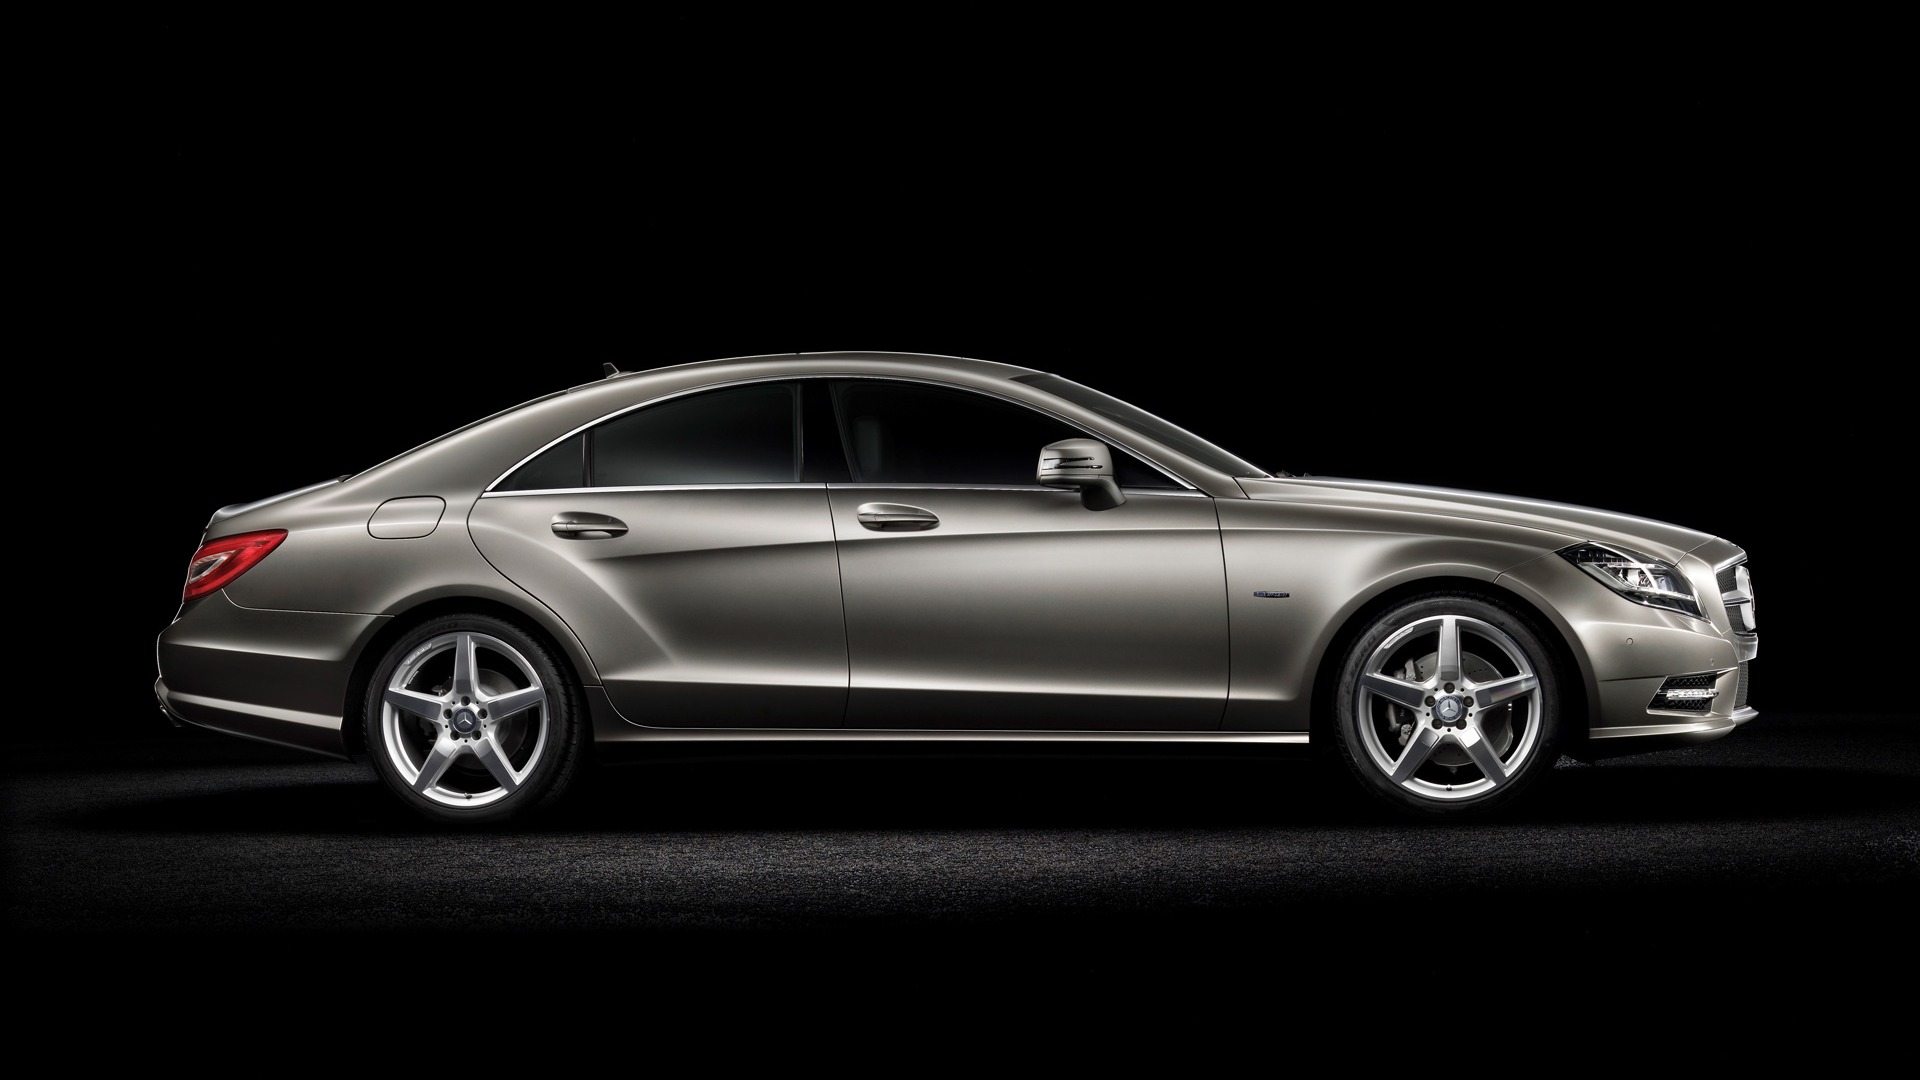 Mercedes-Benz Classe CLS - 2010 fonds d'écran HD #3 - 1920x1080